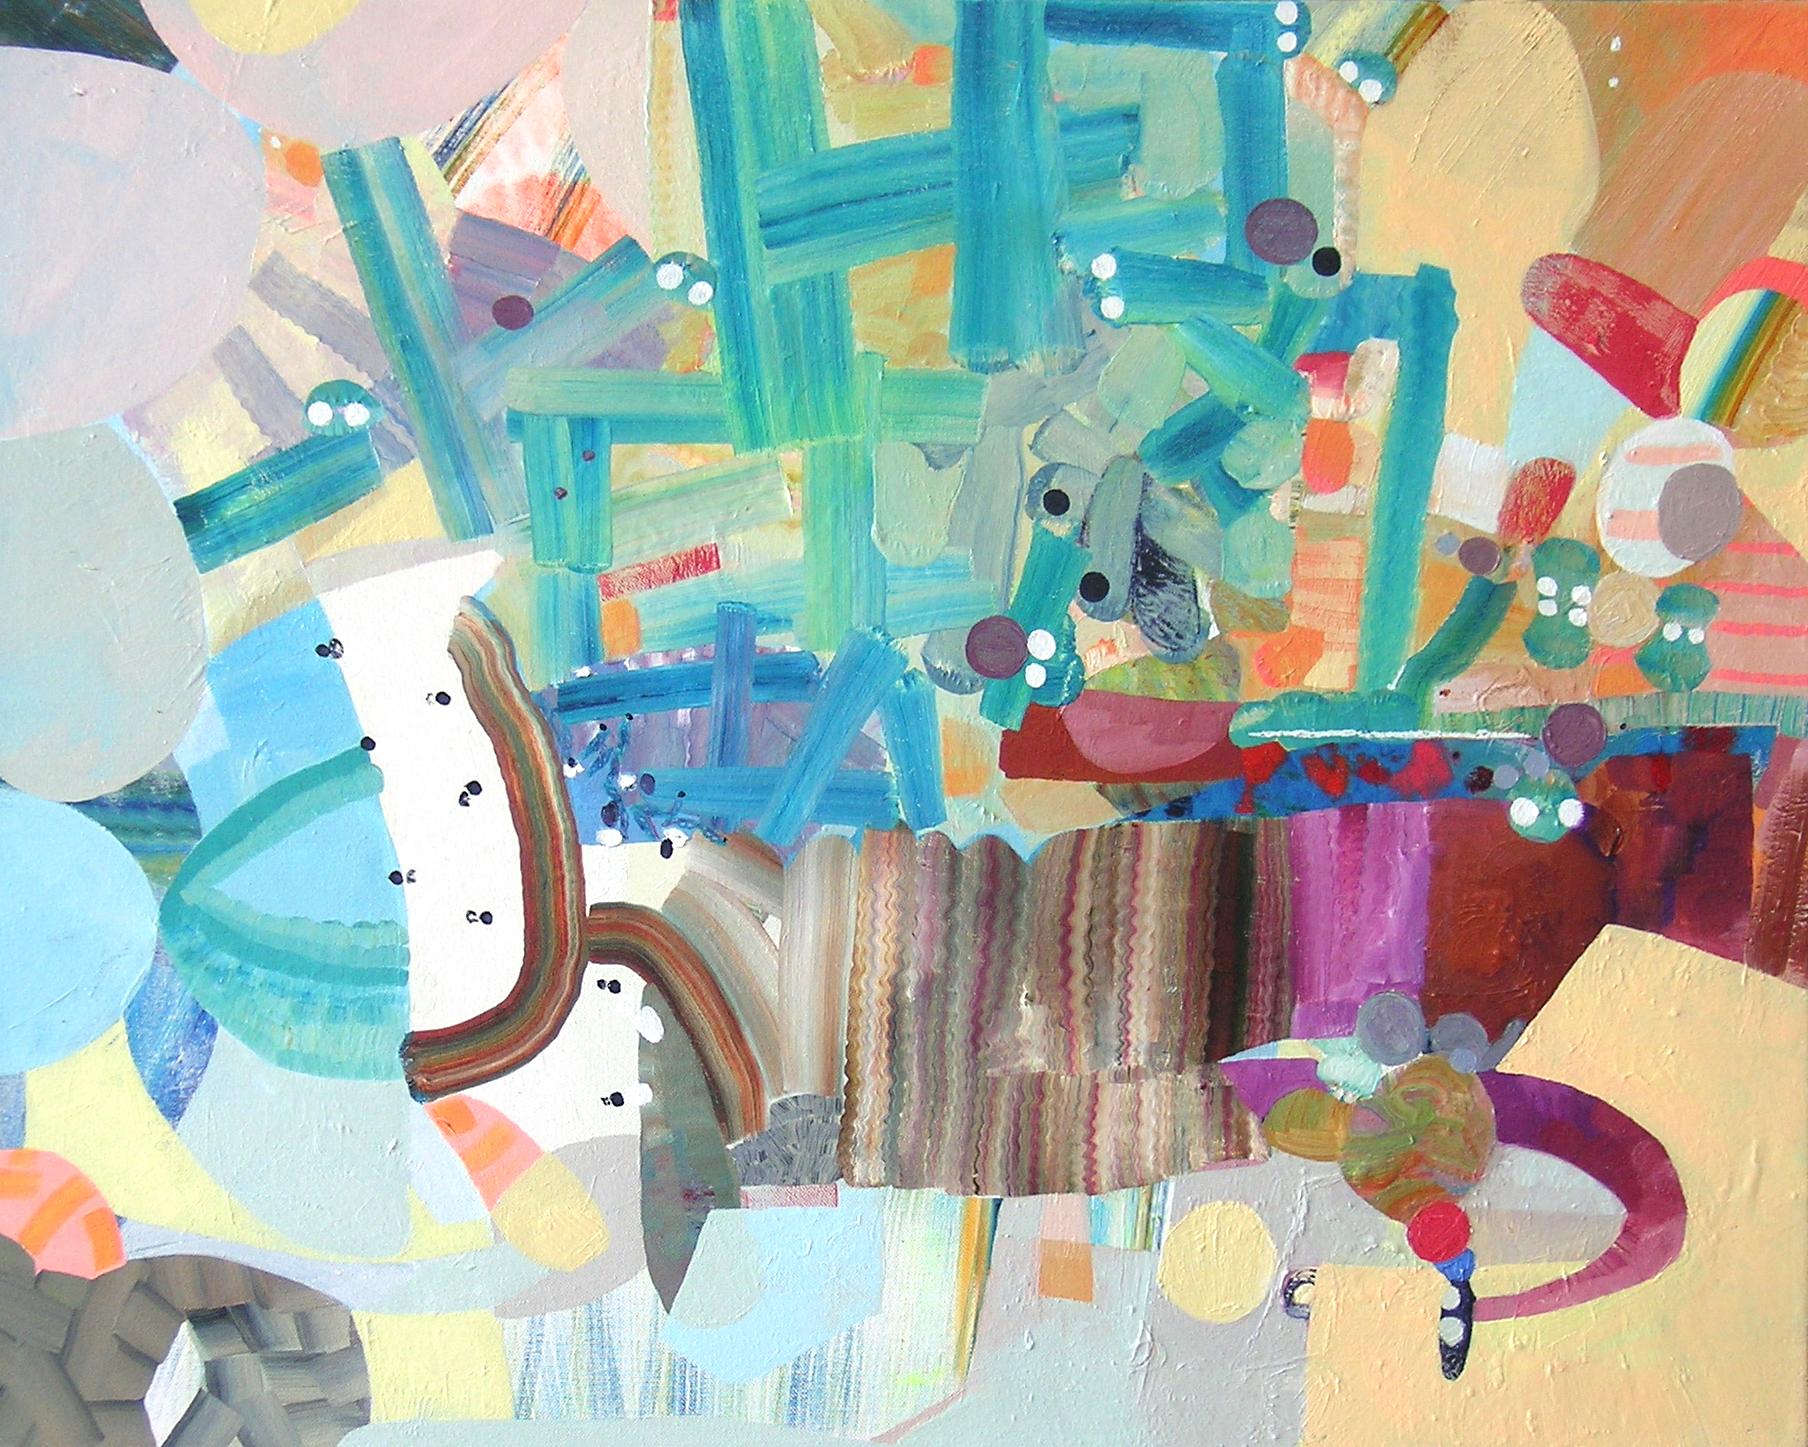 Josette Urso
Uphill, 2020
huile sur toile
24 x 30 in.
(urso198)

La peintre new-yorkaise Josette Urso peint intuitivement en réaction à son environnement immédiat, tant à l'intérieur qu'à l'extérieur de son atelier. En utilisant une manipulation